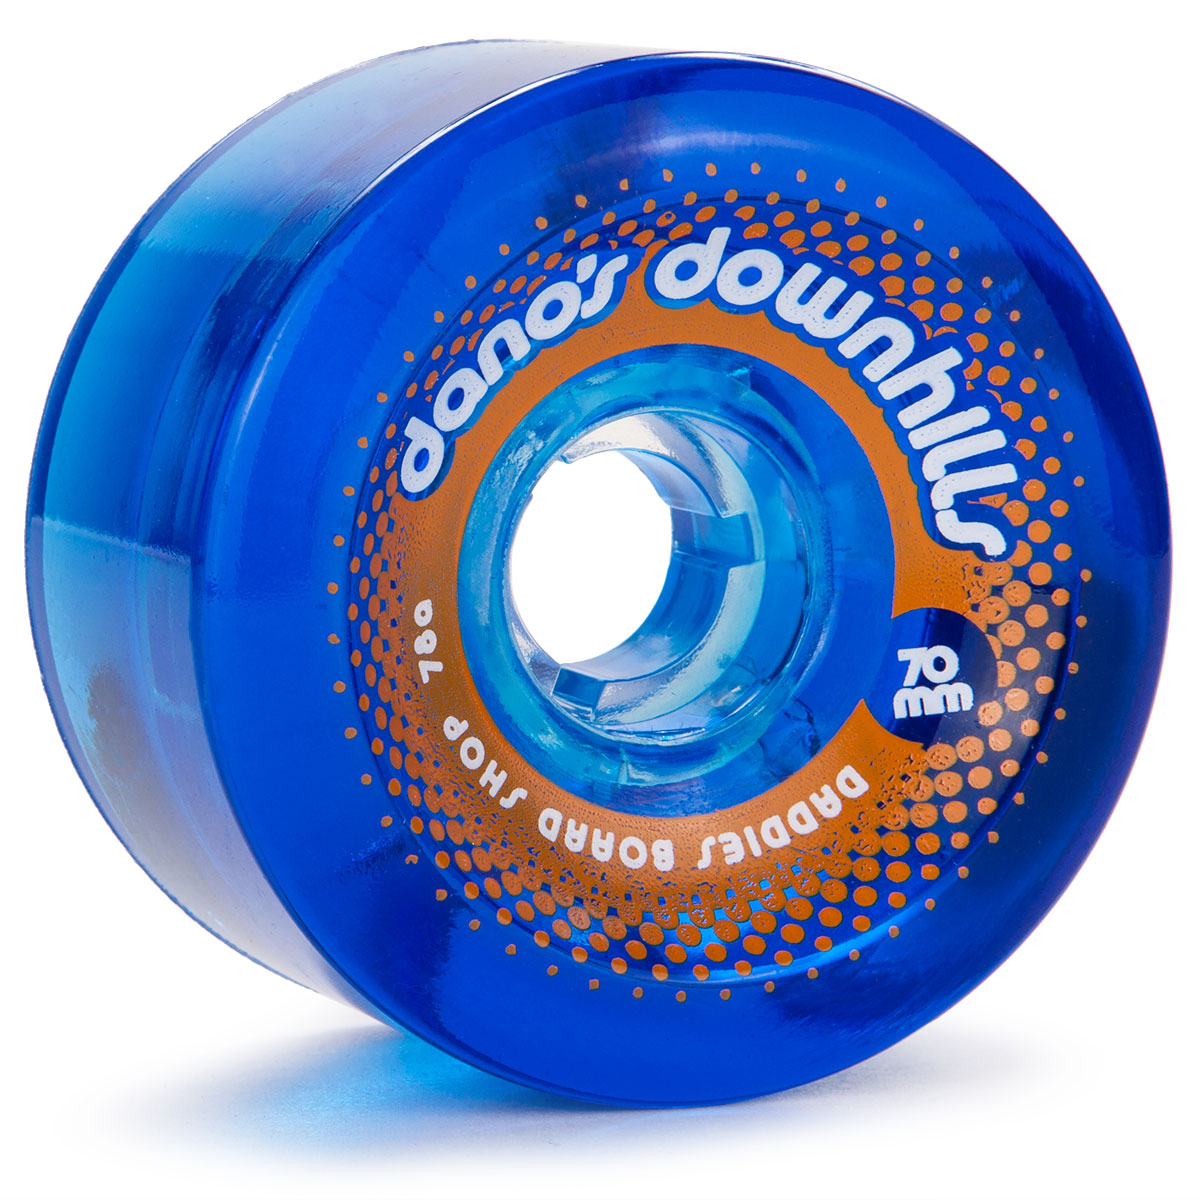 Dano's Downhills Longboard Wheels 70mm - 78a Blue image 1